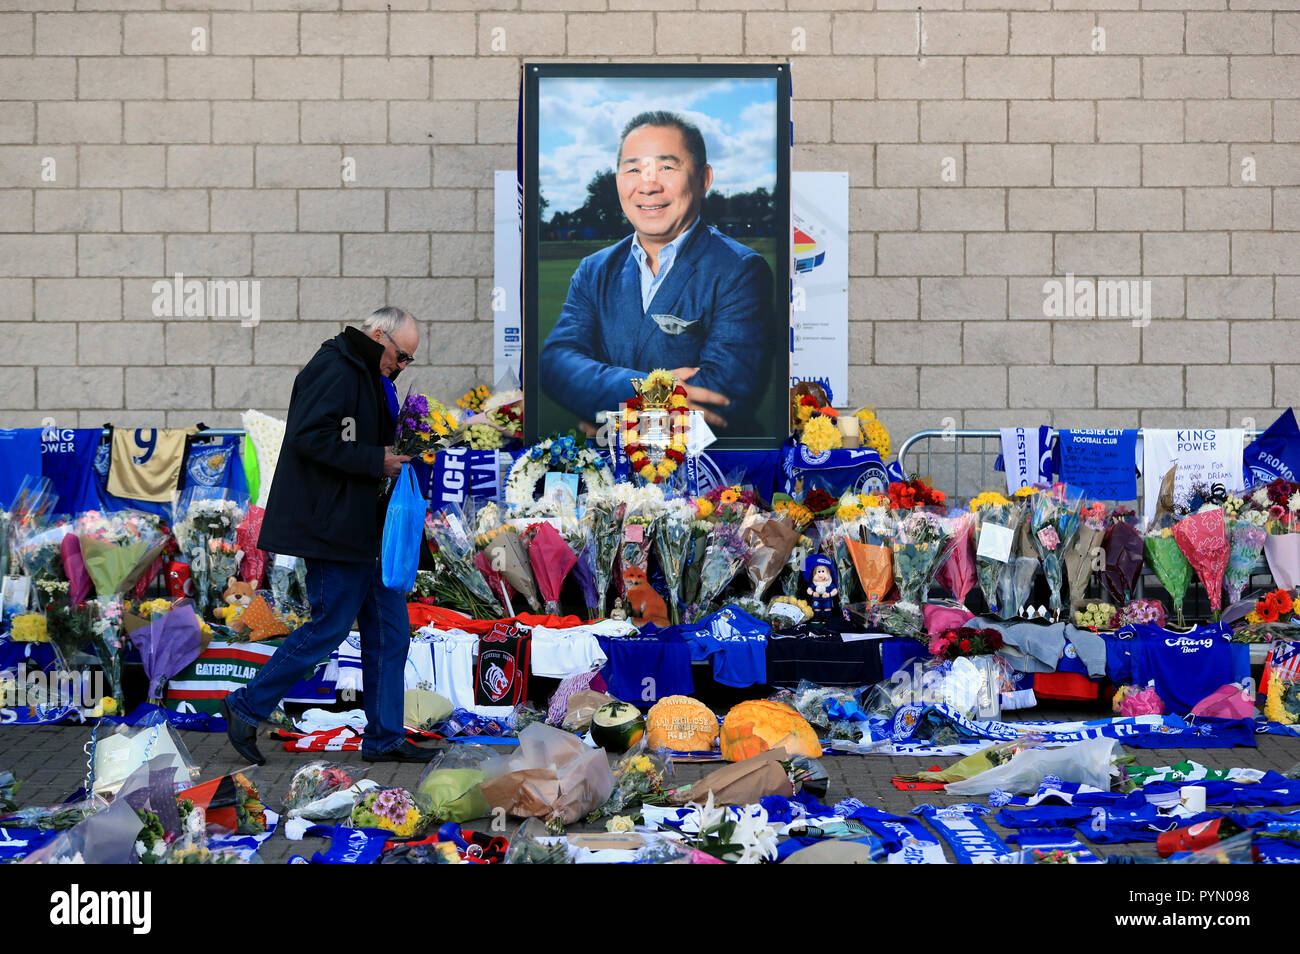 I sostenitori di rendere omaggio a Leicester City Football Club. Presidente di Leicester, Vichai Srivaddhanaprabha, era fra quelli che hanno tragicamente perso la vita il sabato sera quando un elicottero che trasporta lui e altre quattro persone si è schiantato fuori re lo stadio di potenza. Foto Stock